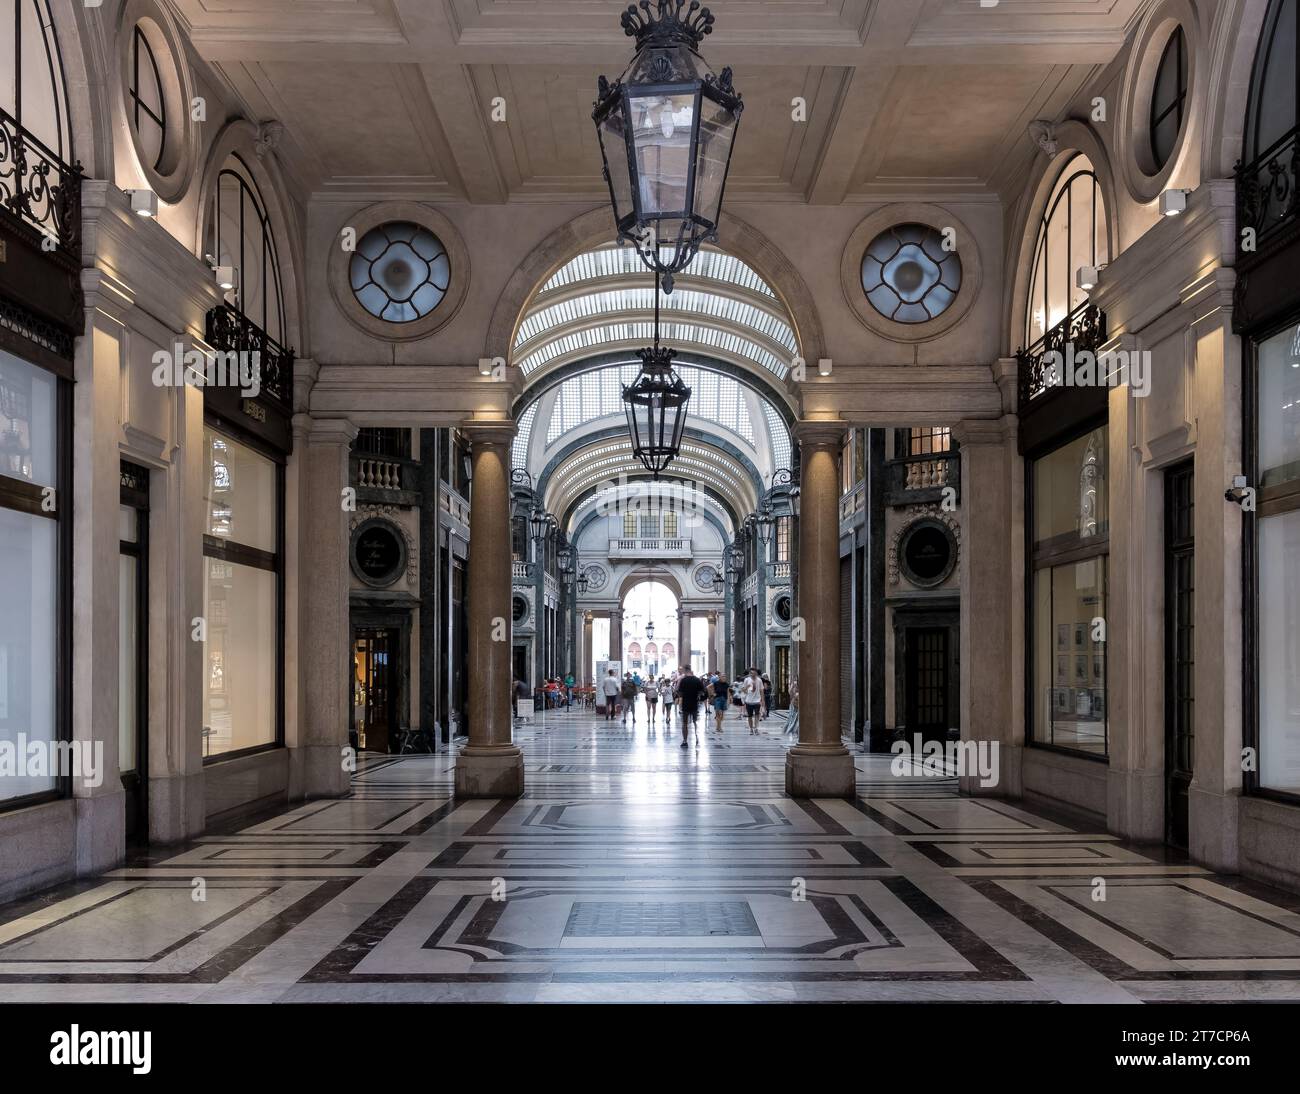 Particolare della Galleria San Federico, edificio commerciale nel centro storico di Torino. Costruito negli anni '1930, ospita numerosi negozi e uffici. Foto Stock